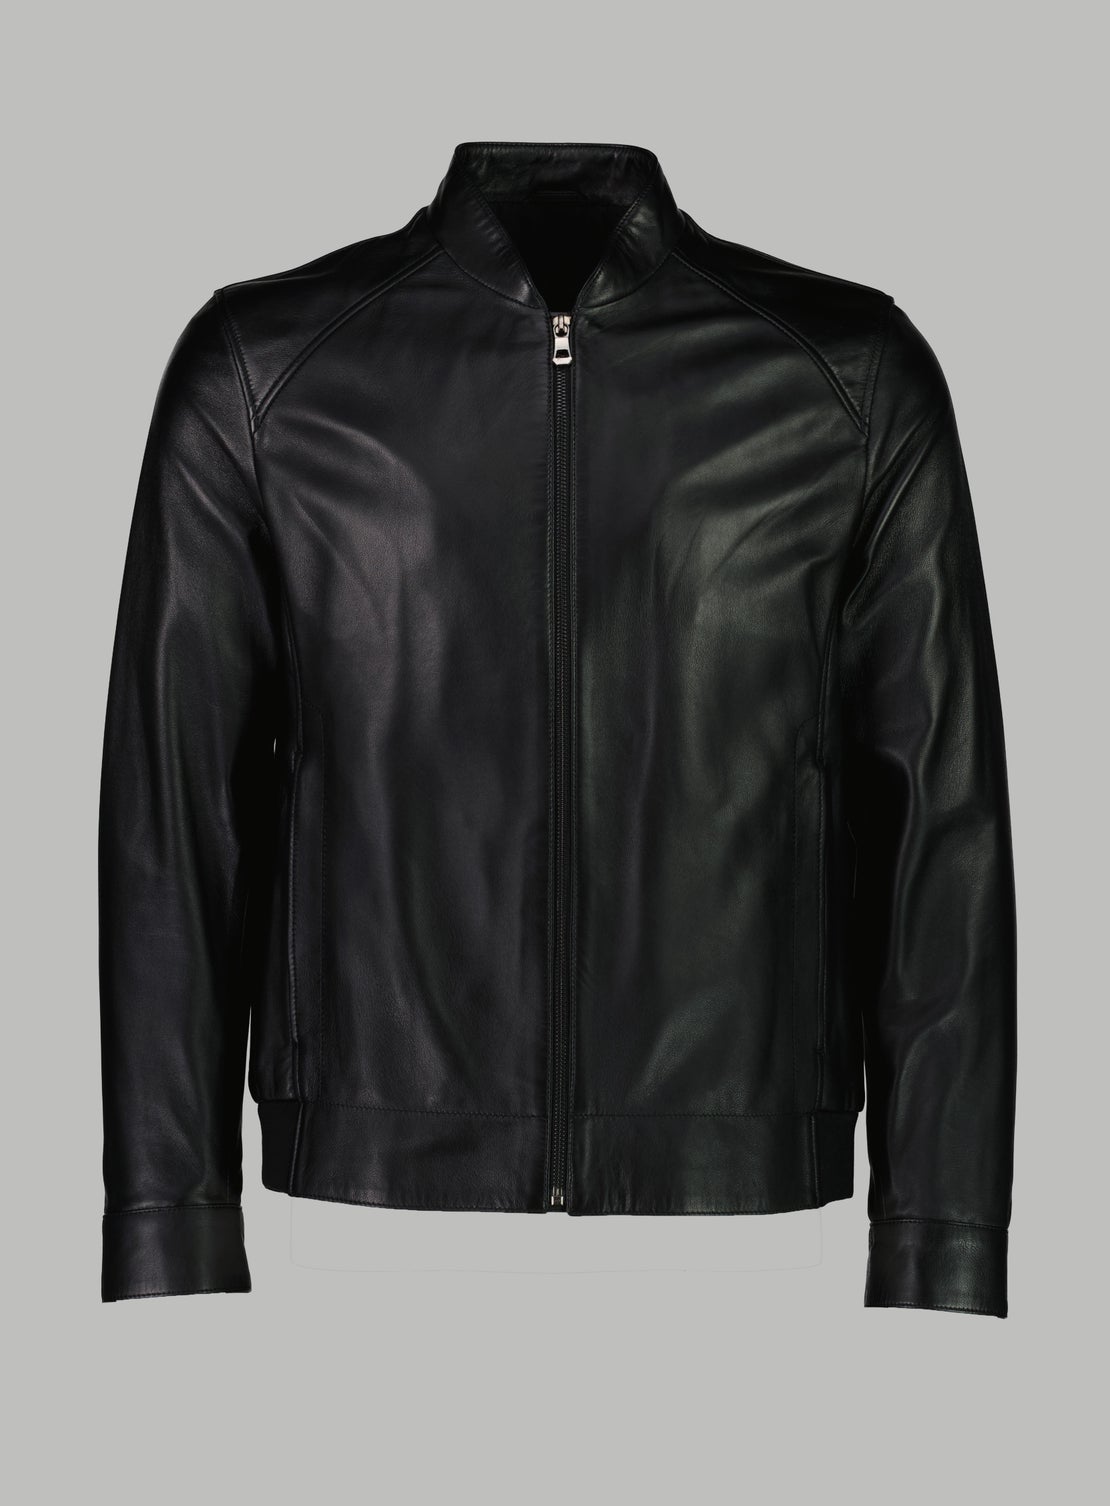 Tyrone Black Leather Jacket